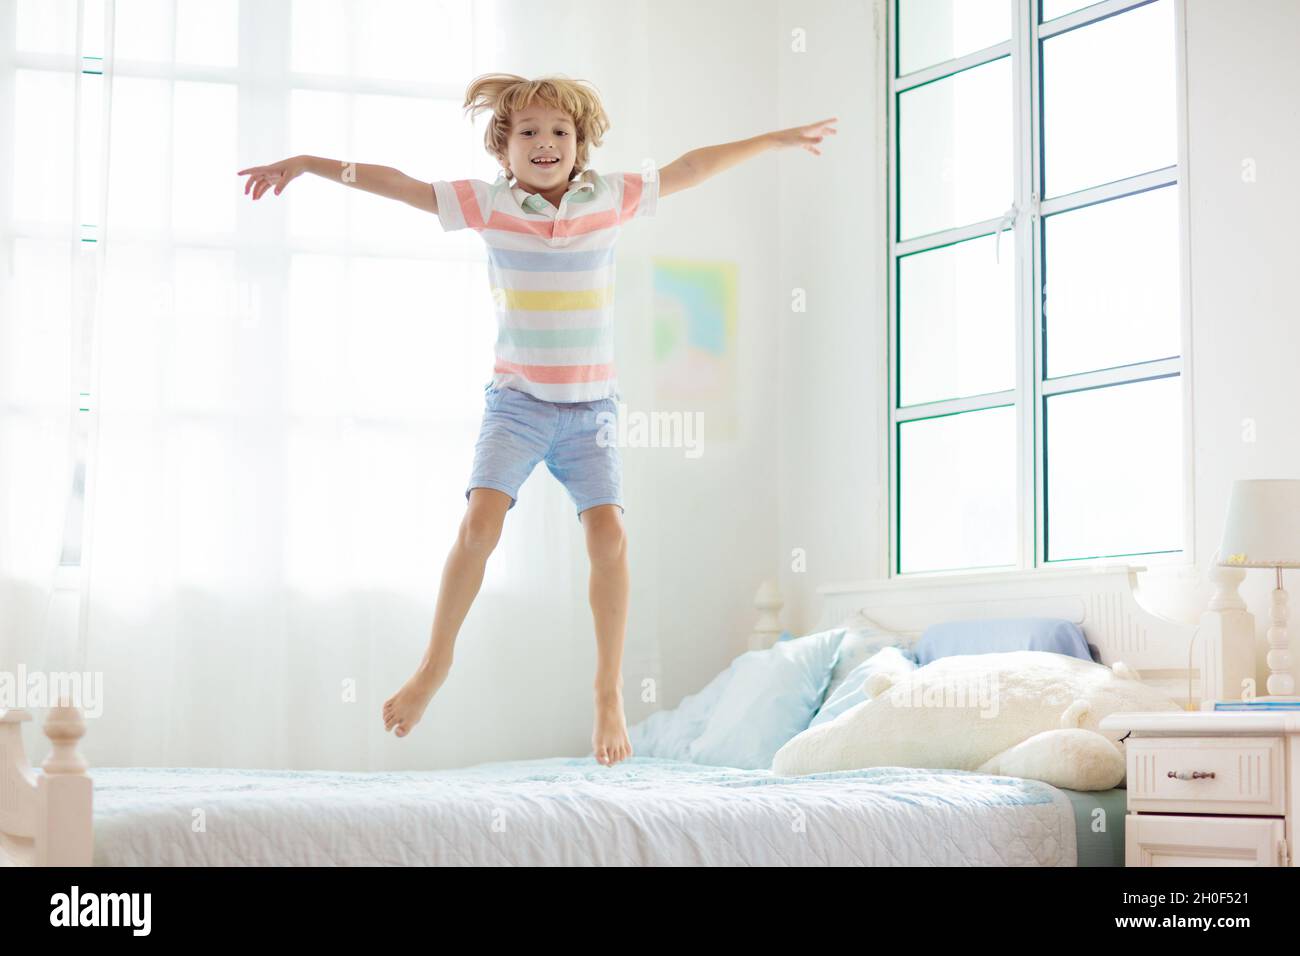 Bambino che salta sul letto in camera bianca con grande finestra. I bambini  giocano a casa.